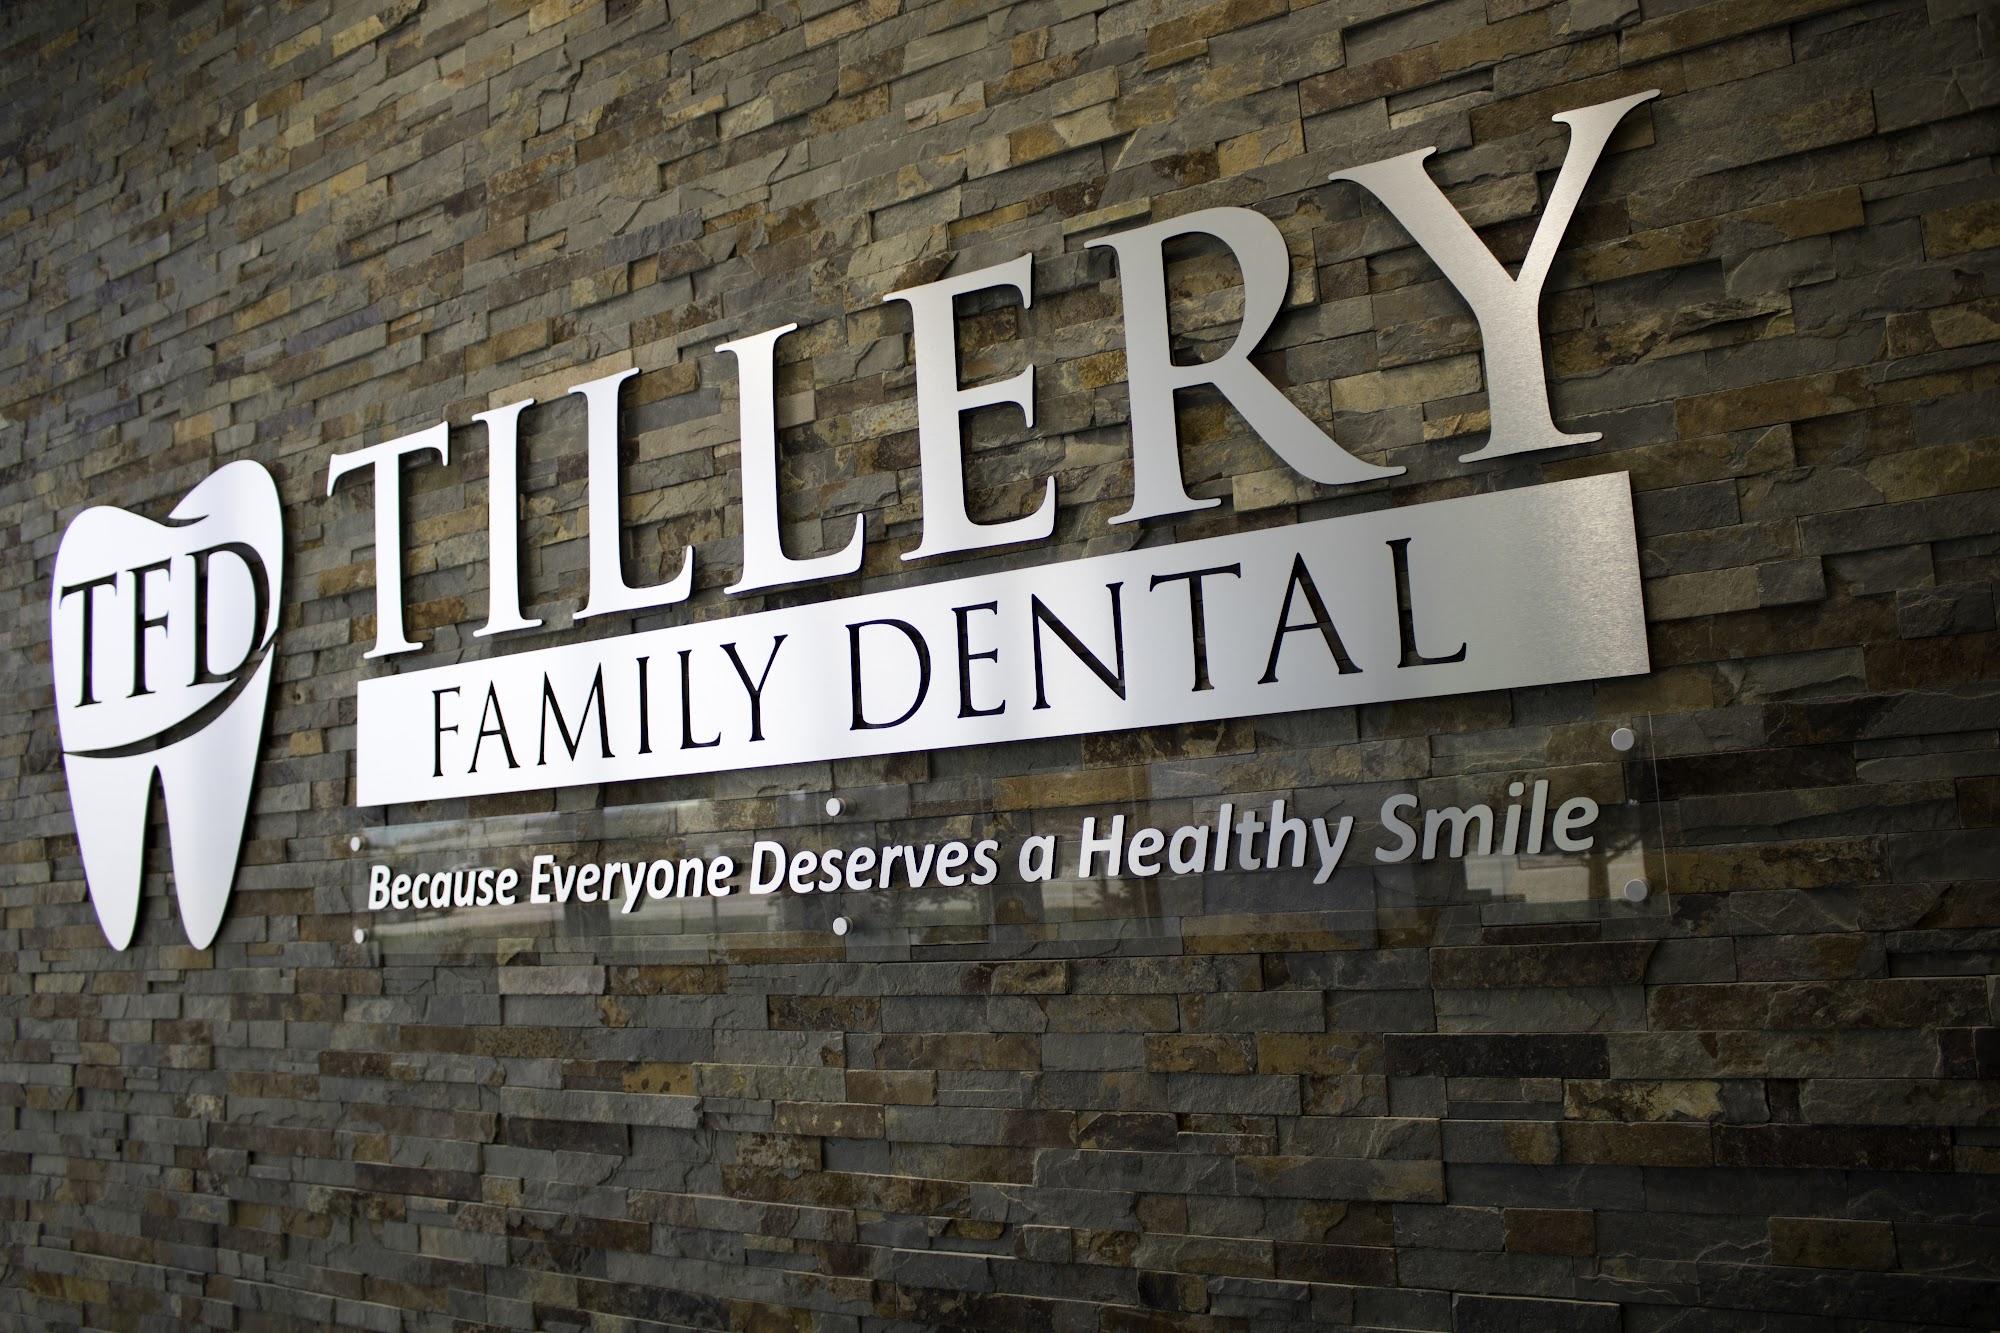 Tillery Family Dental